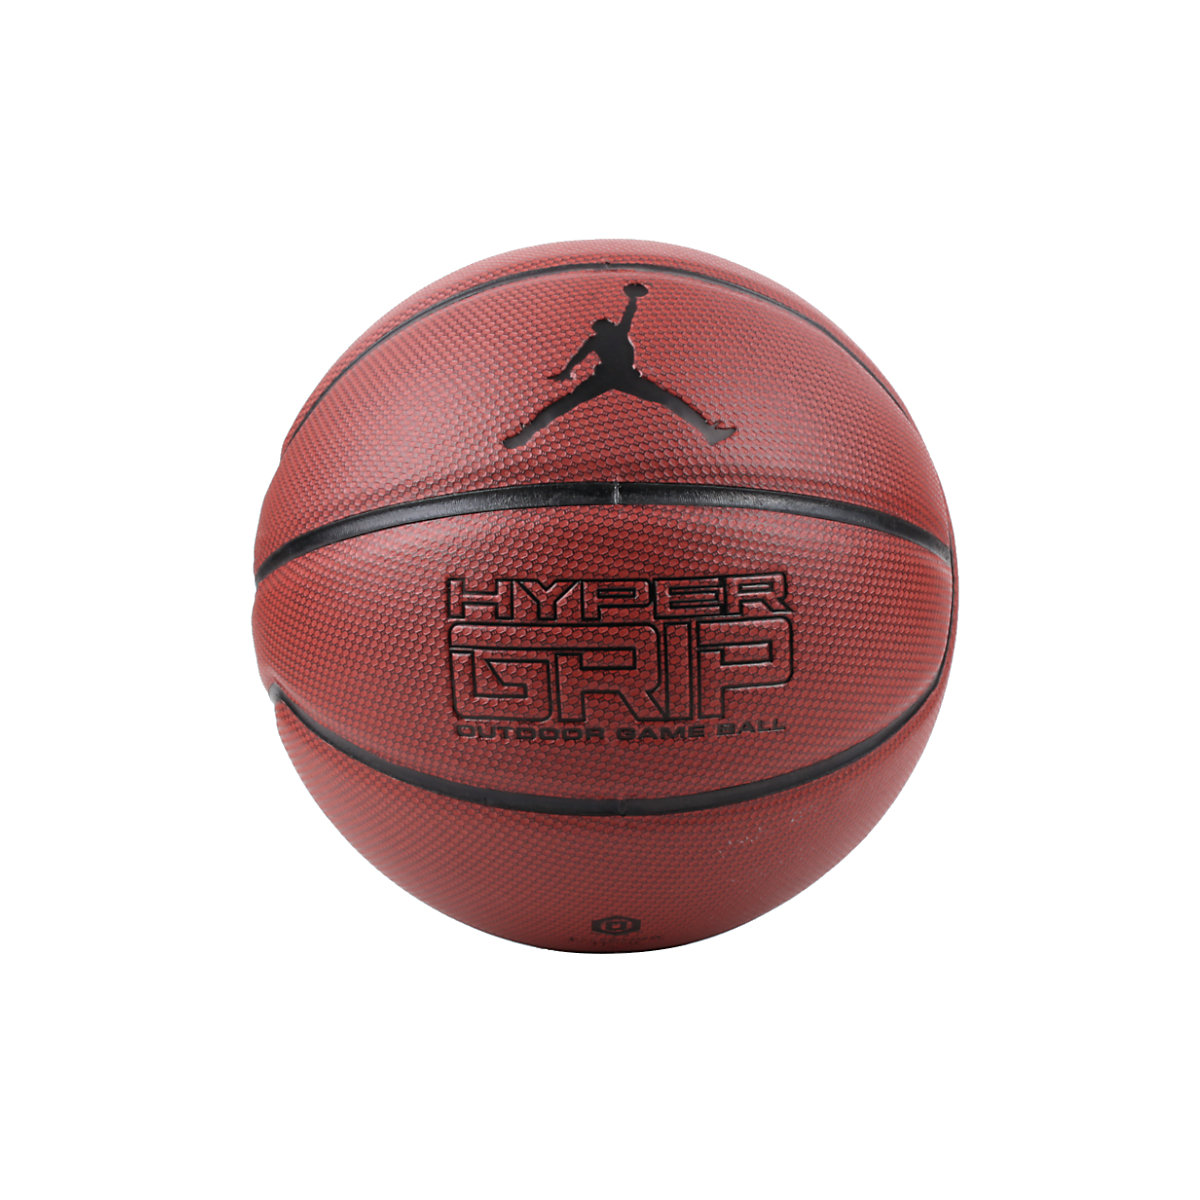 Jordan Basketballbälle Hyper Grip 4 P Ball JKI0185807 Basketbälle für Kinder